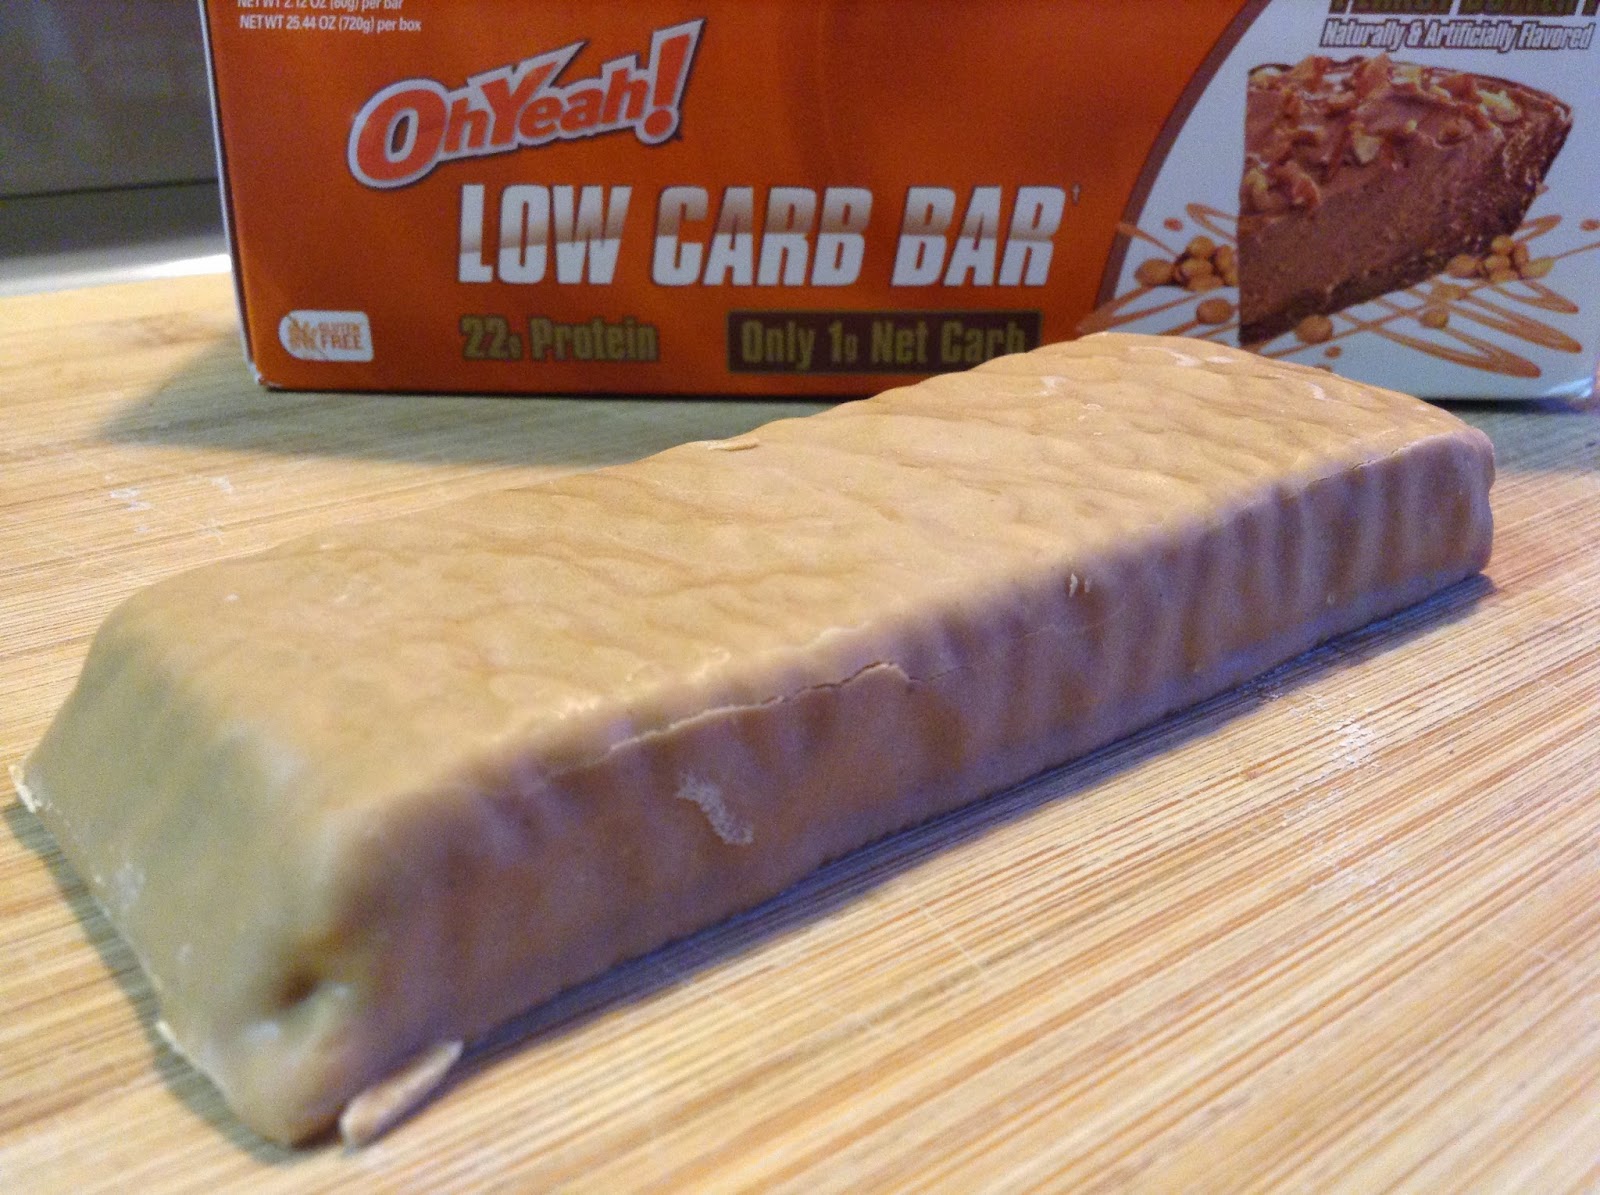 oh yeah! low carb bar